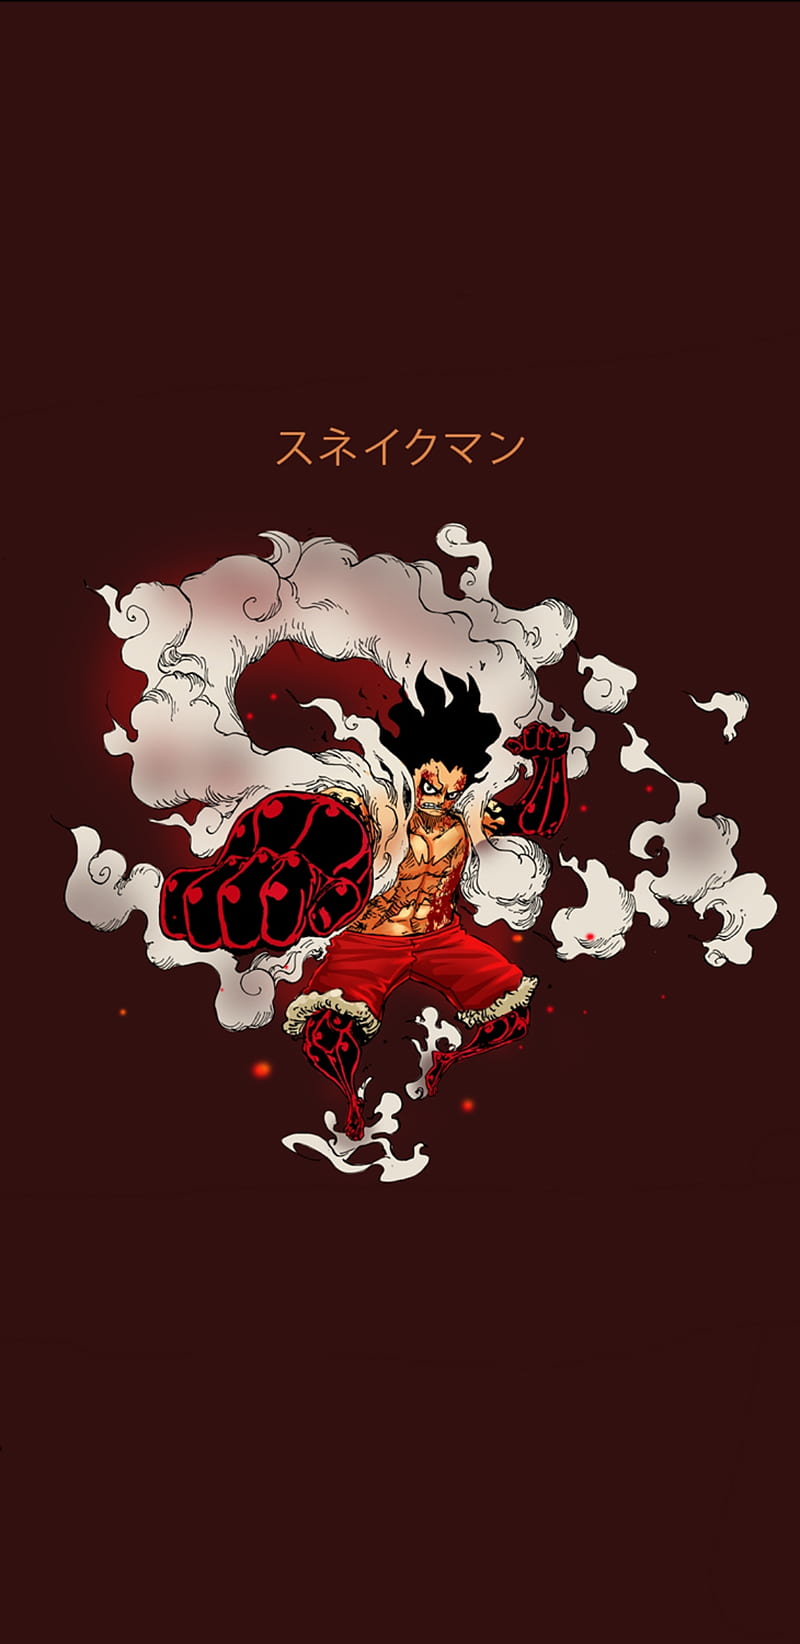 Hãy xem hình nền Luffy Gear 4 Snake Man đầy mạnh mẽ, năng động và đầy uy lực. Bạn sẽ được chiêm ngưỡng sự thần thái của Luffy khi biến hóa. Hãy cảm nhận sự thăng hoa của Luffy và cùng nhau phiêu lưu đến mọi miền đất trời.